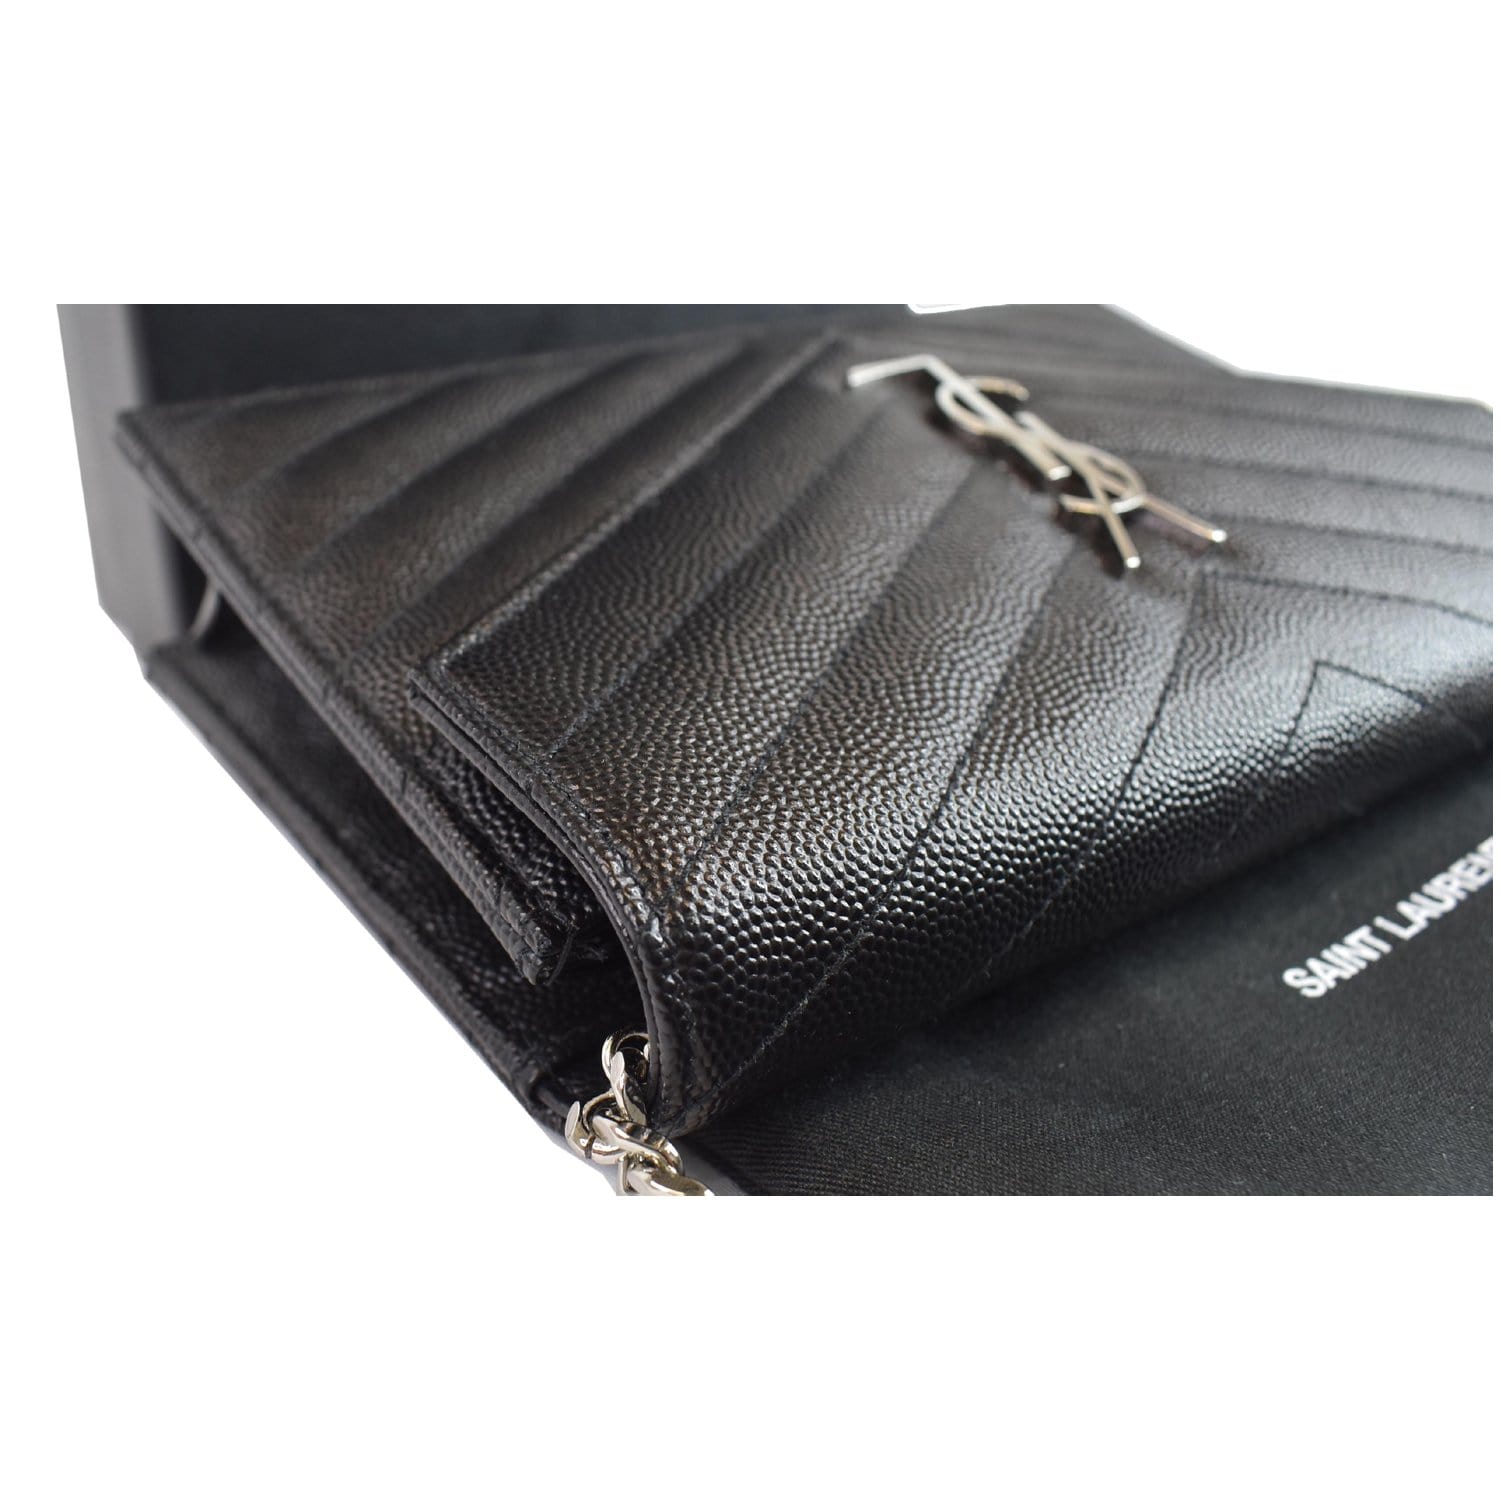 Saint Laurent Large Monogram Leather Wallet Black